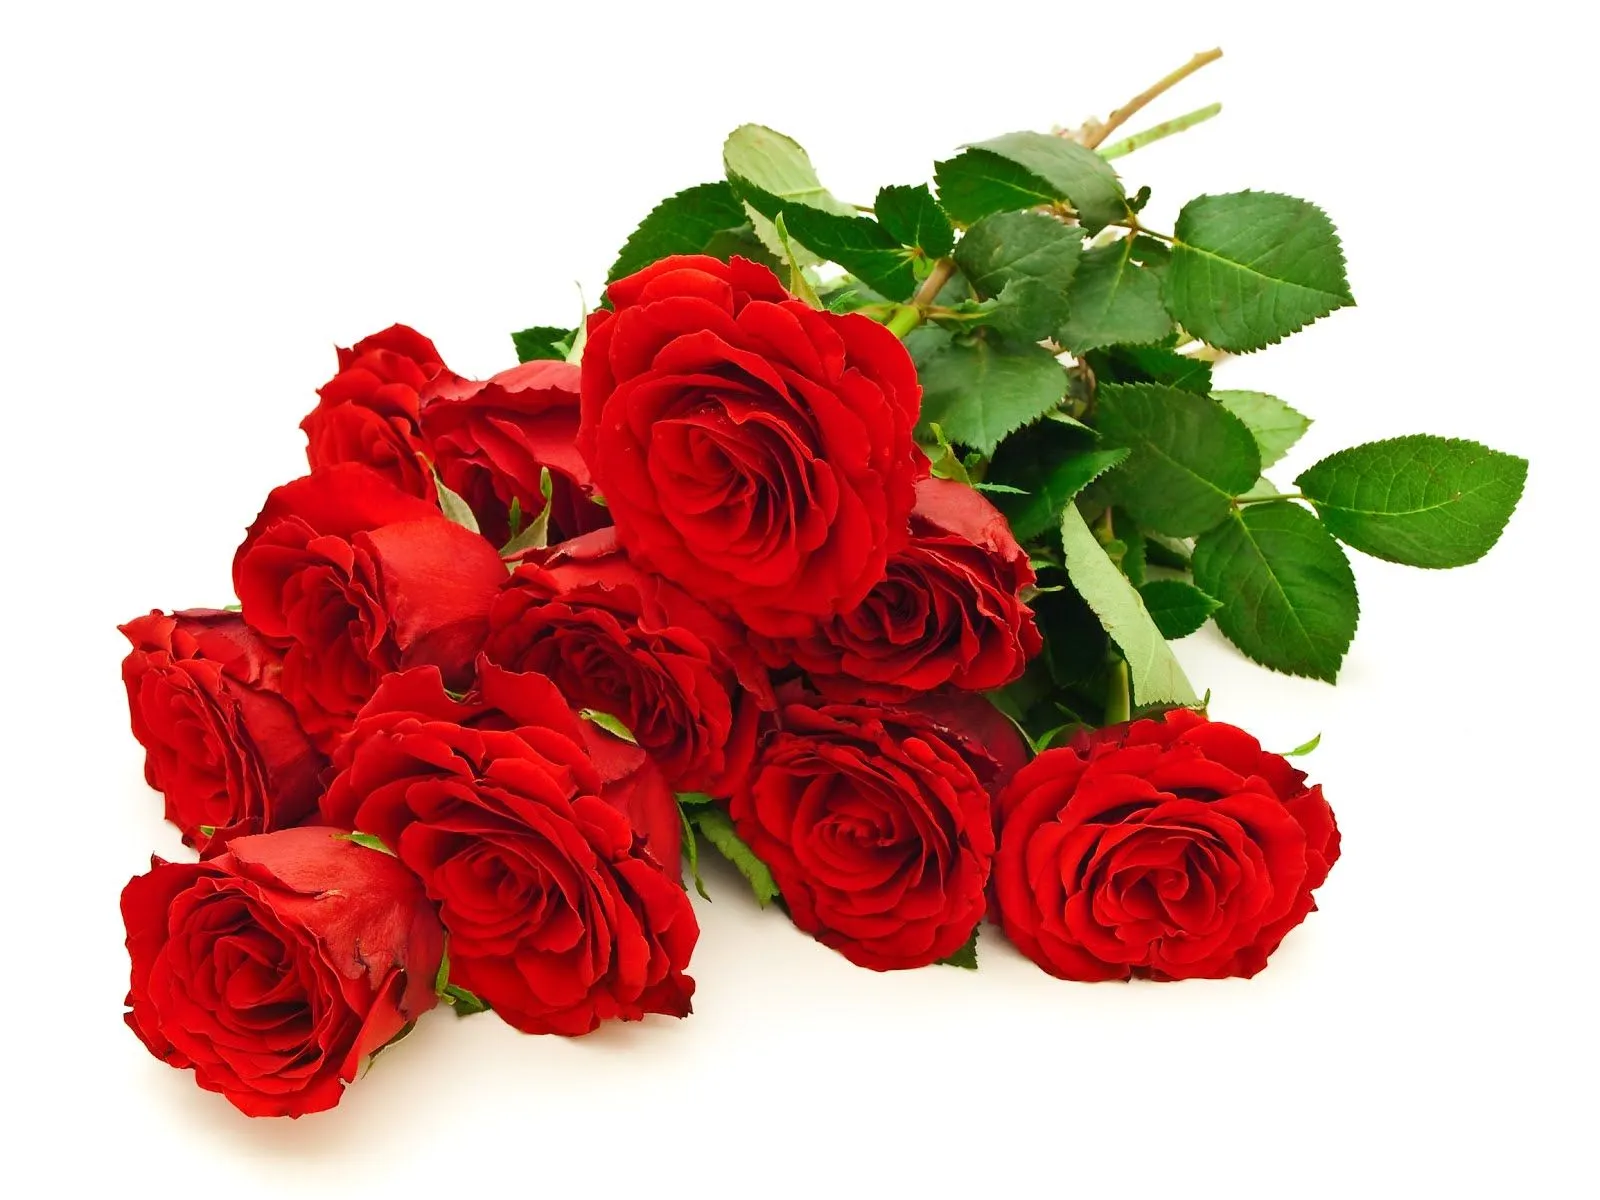 Hermoso ramo de rosas rojas – Red roses – Flowers | Imagenes para ...